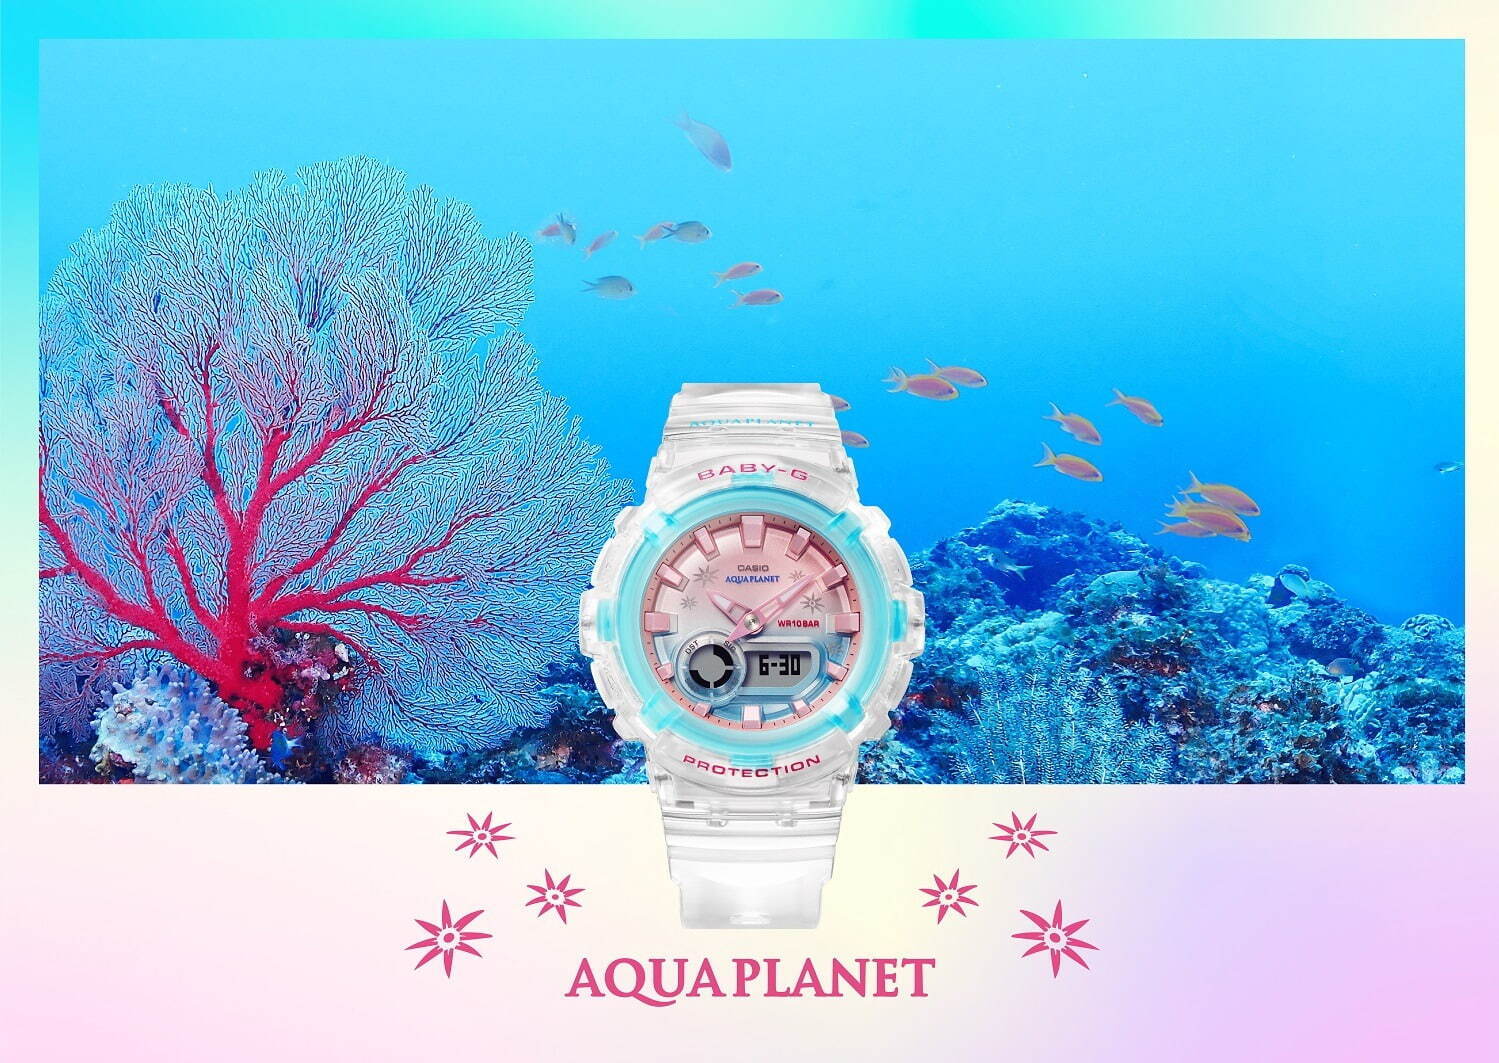 BABY-G“珊瑚”がテーマの新作ウォッチ、海のようなスケルトンカラー